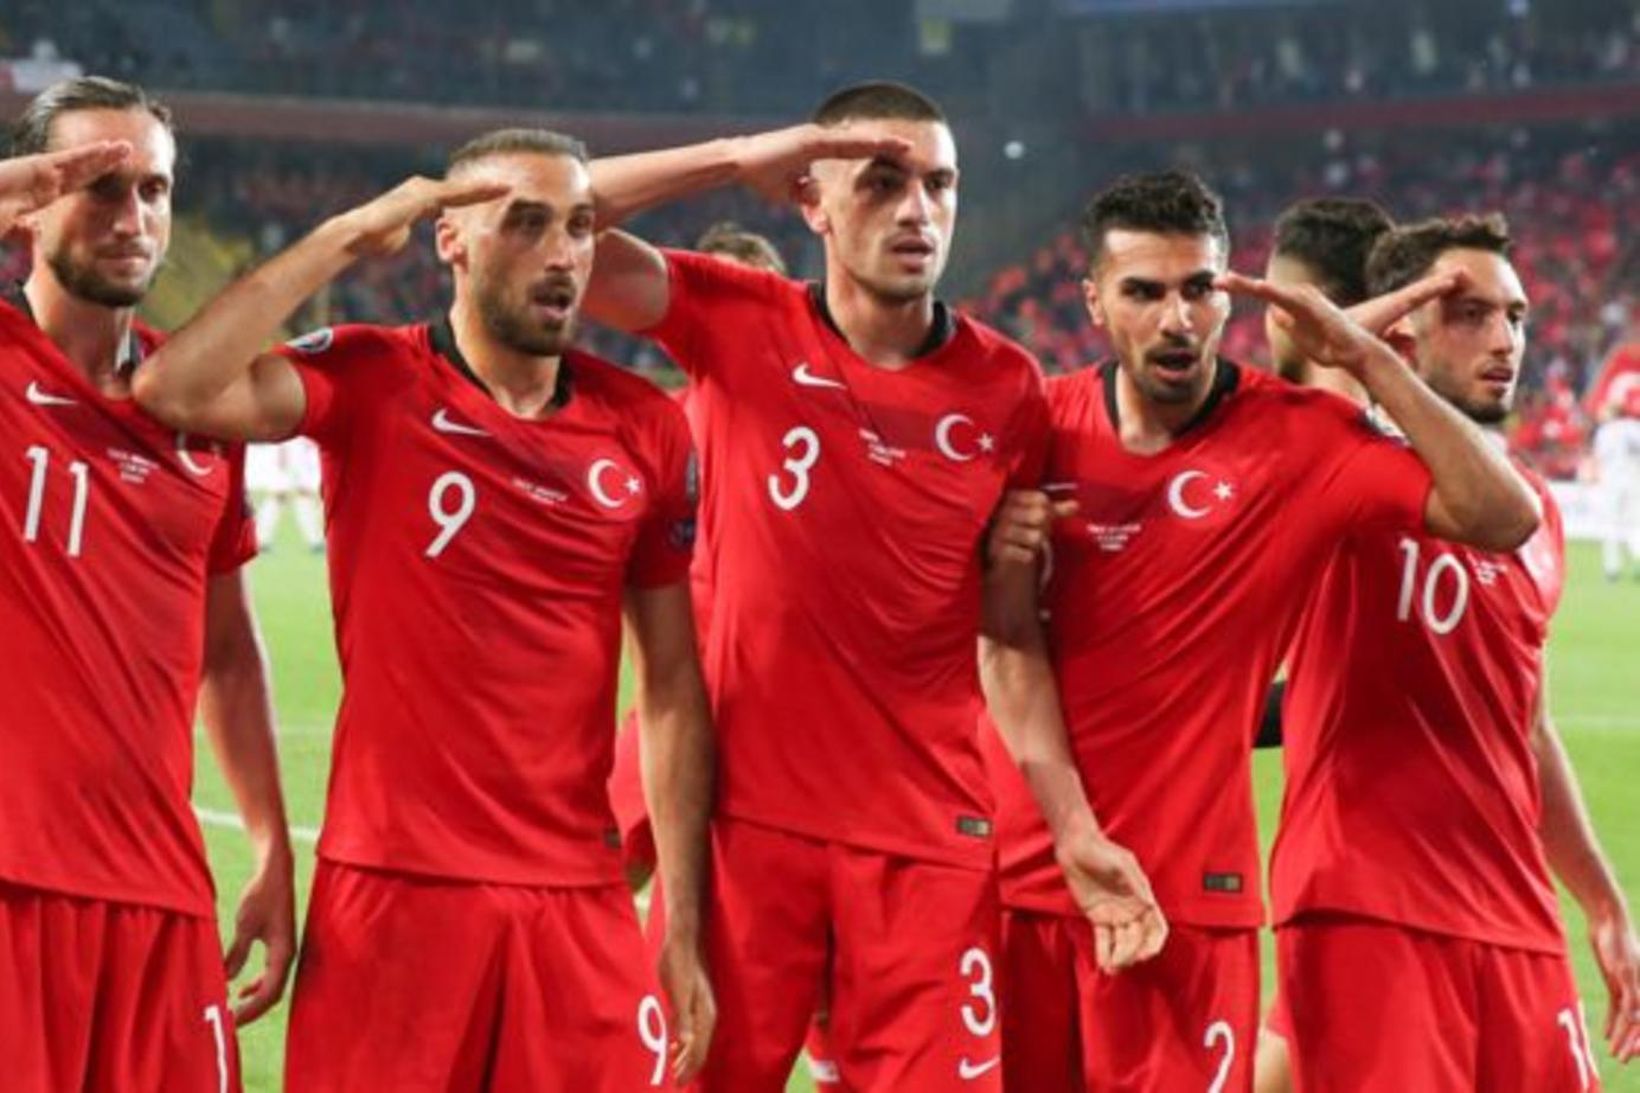 Tyrkir fagna sigurmarkinu gegn Albaníu á föstudagskvöld.